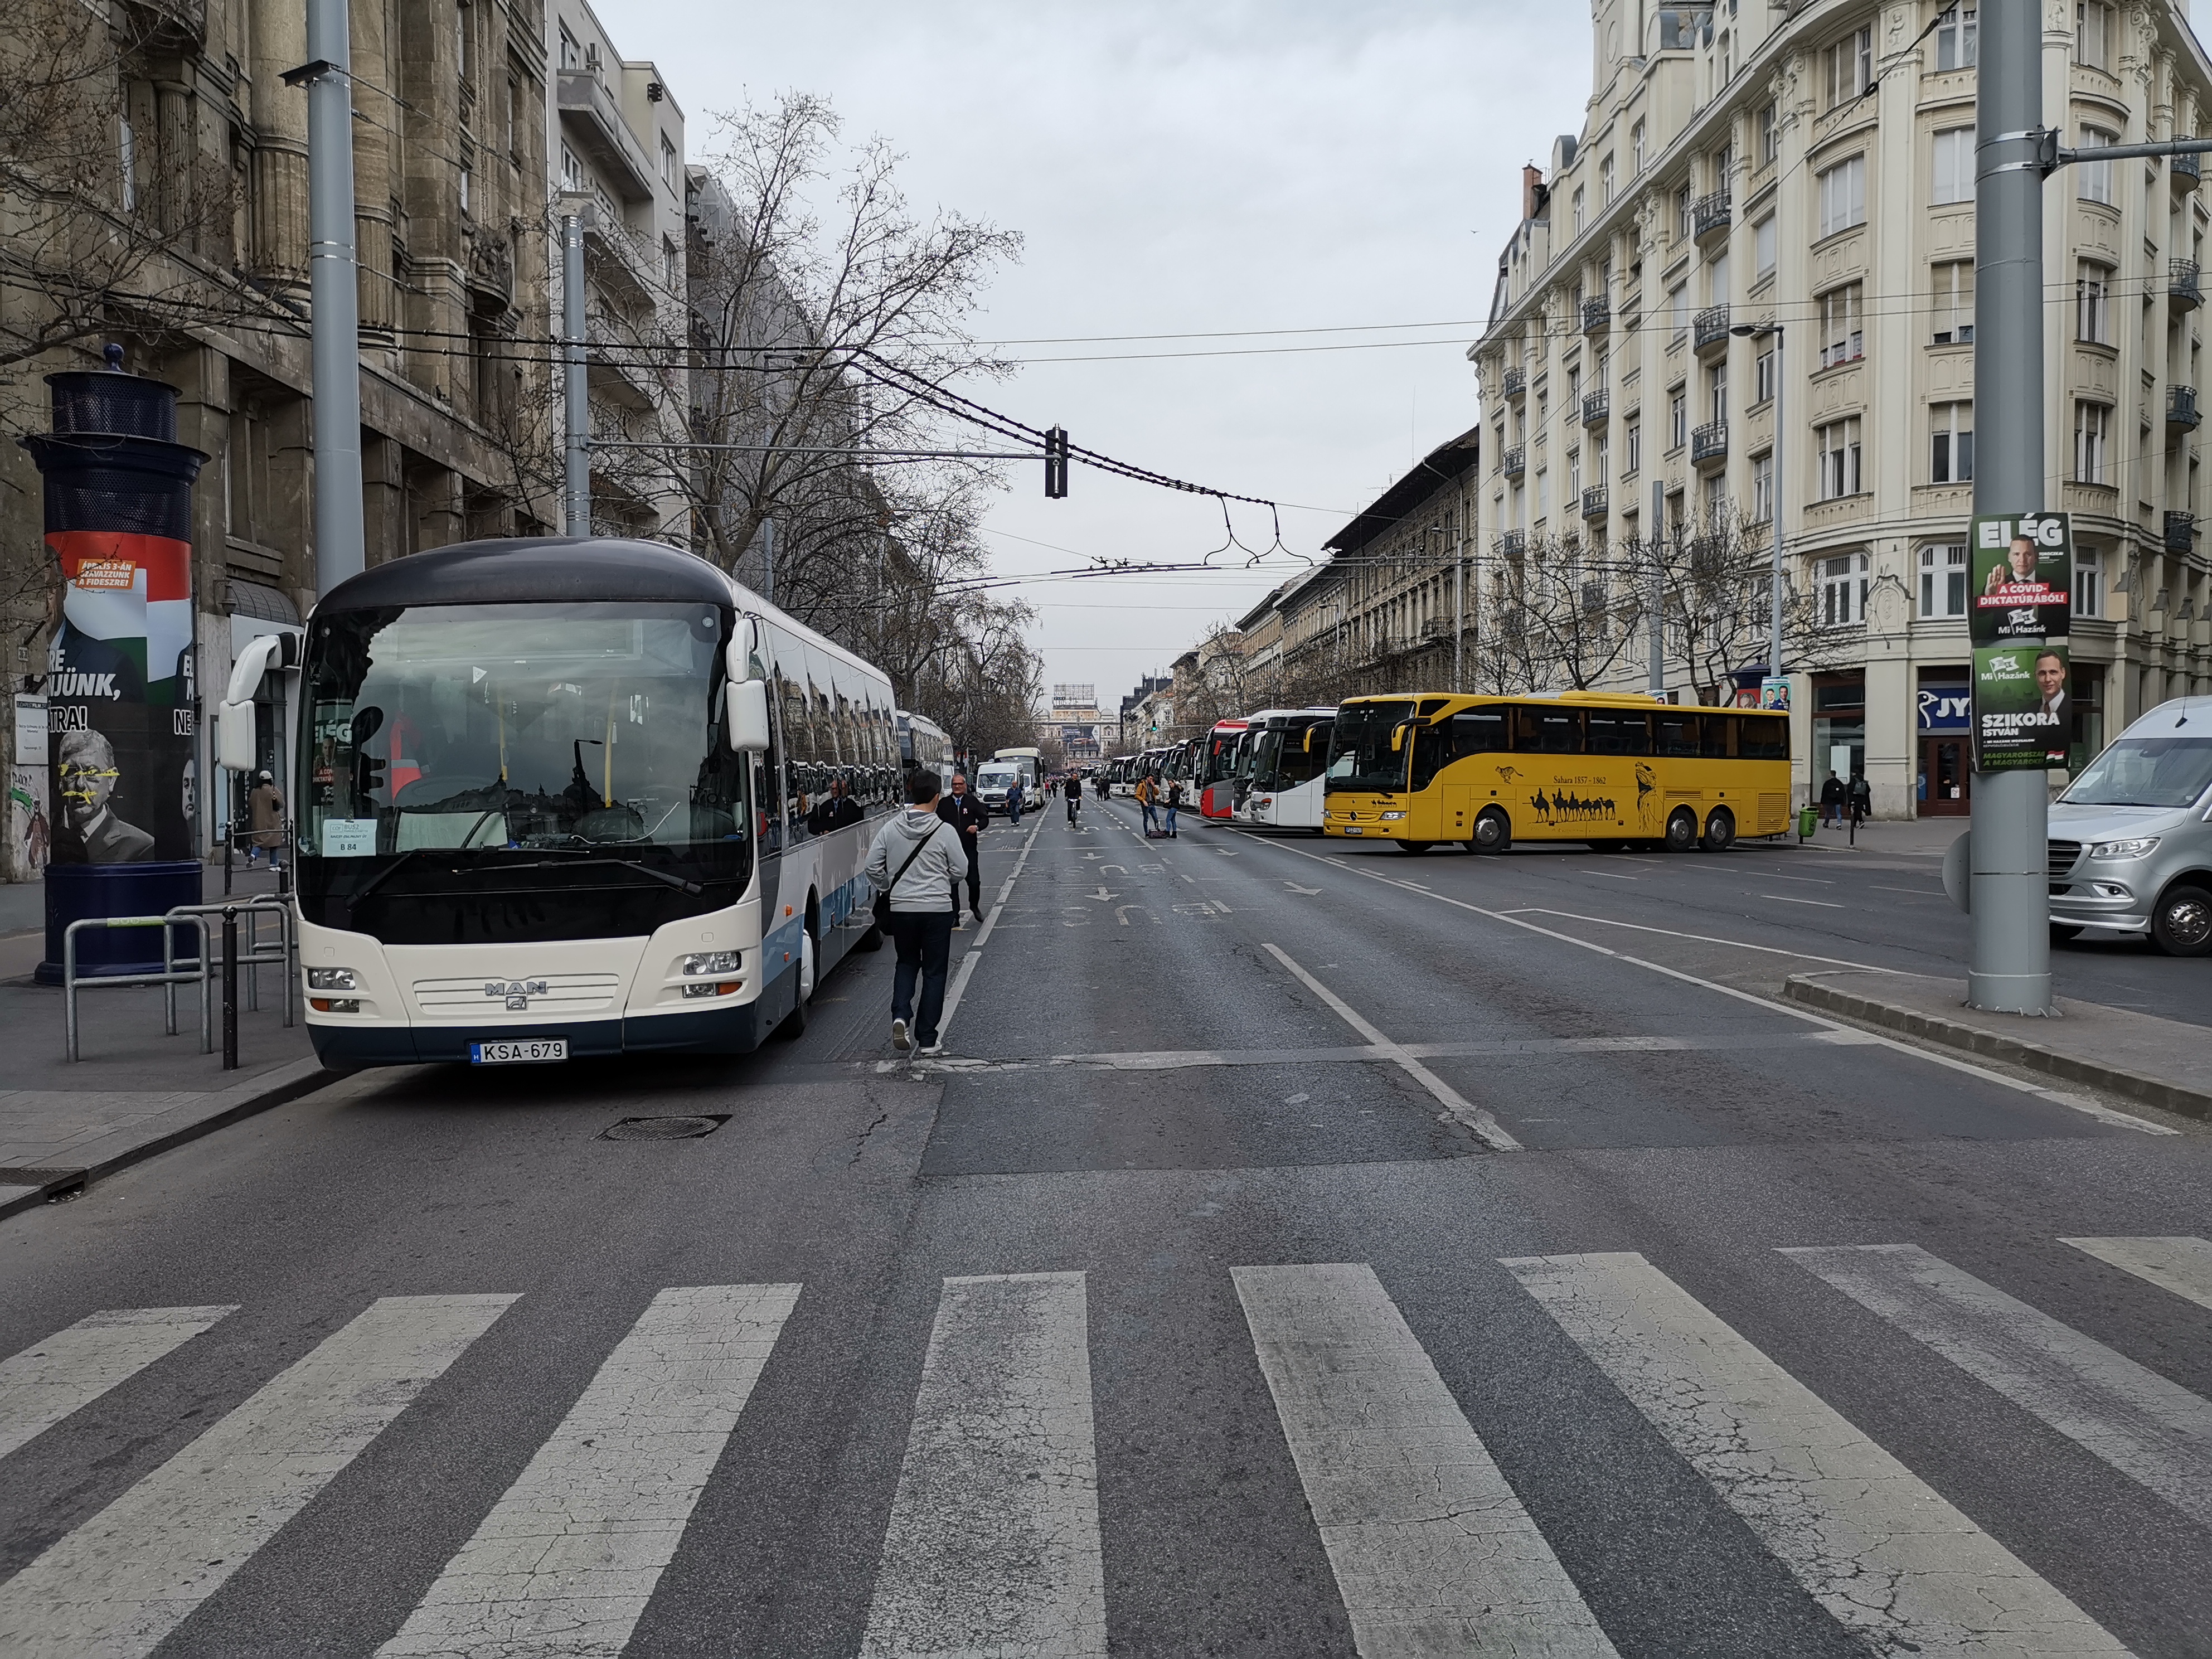 Megszámoltuk: 196 békemenetes busz sorakozik a Bajcsy-Zsilinszky úton